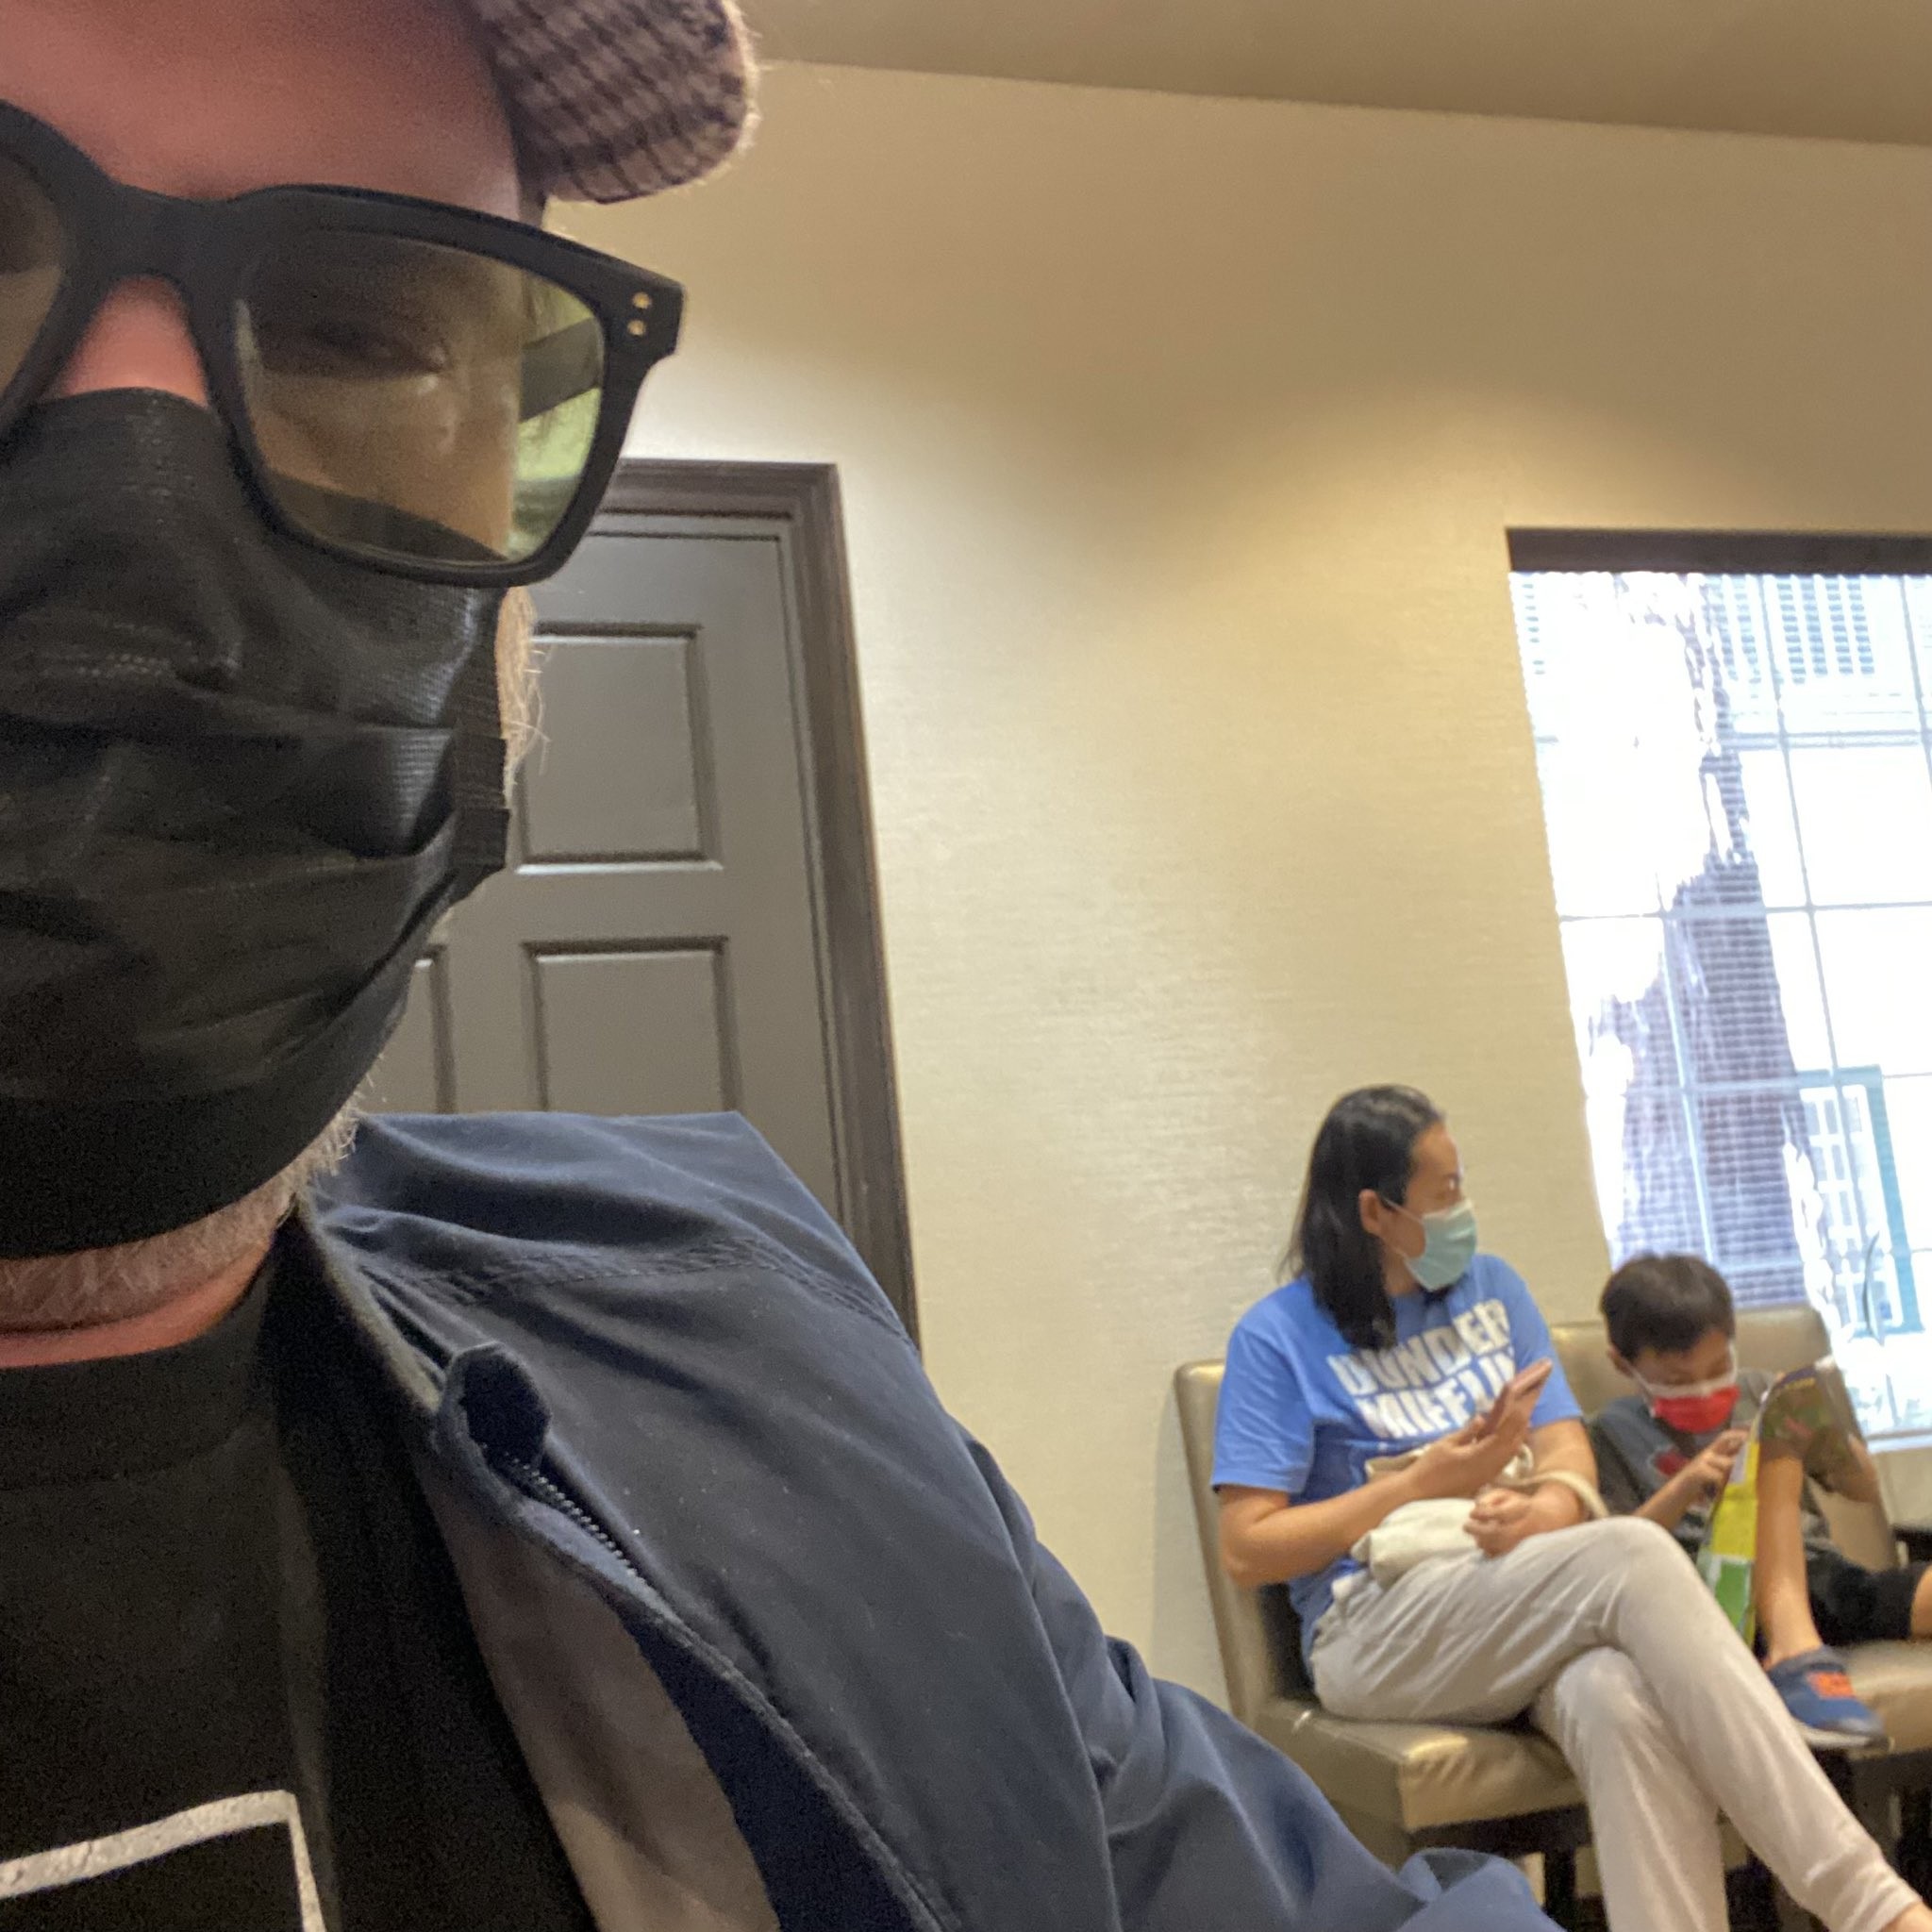 Ator Rainn Wilson despista fã no dentista (Foto: Reprodução/Twitter)